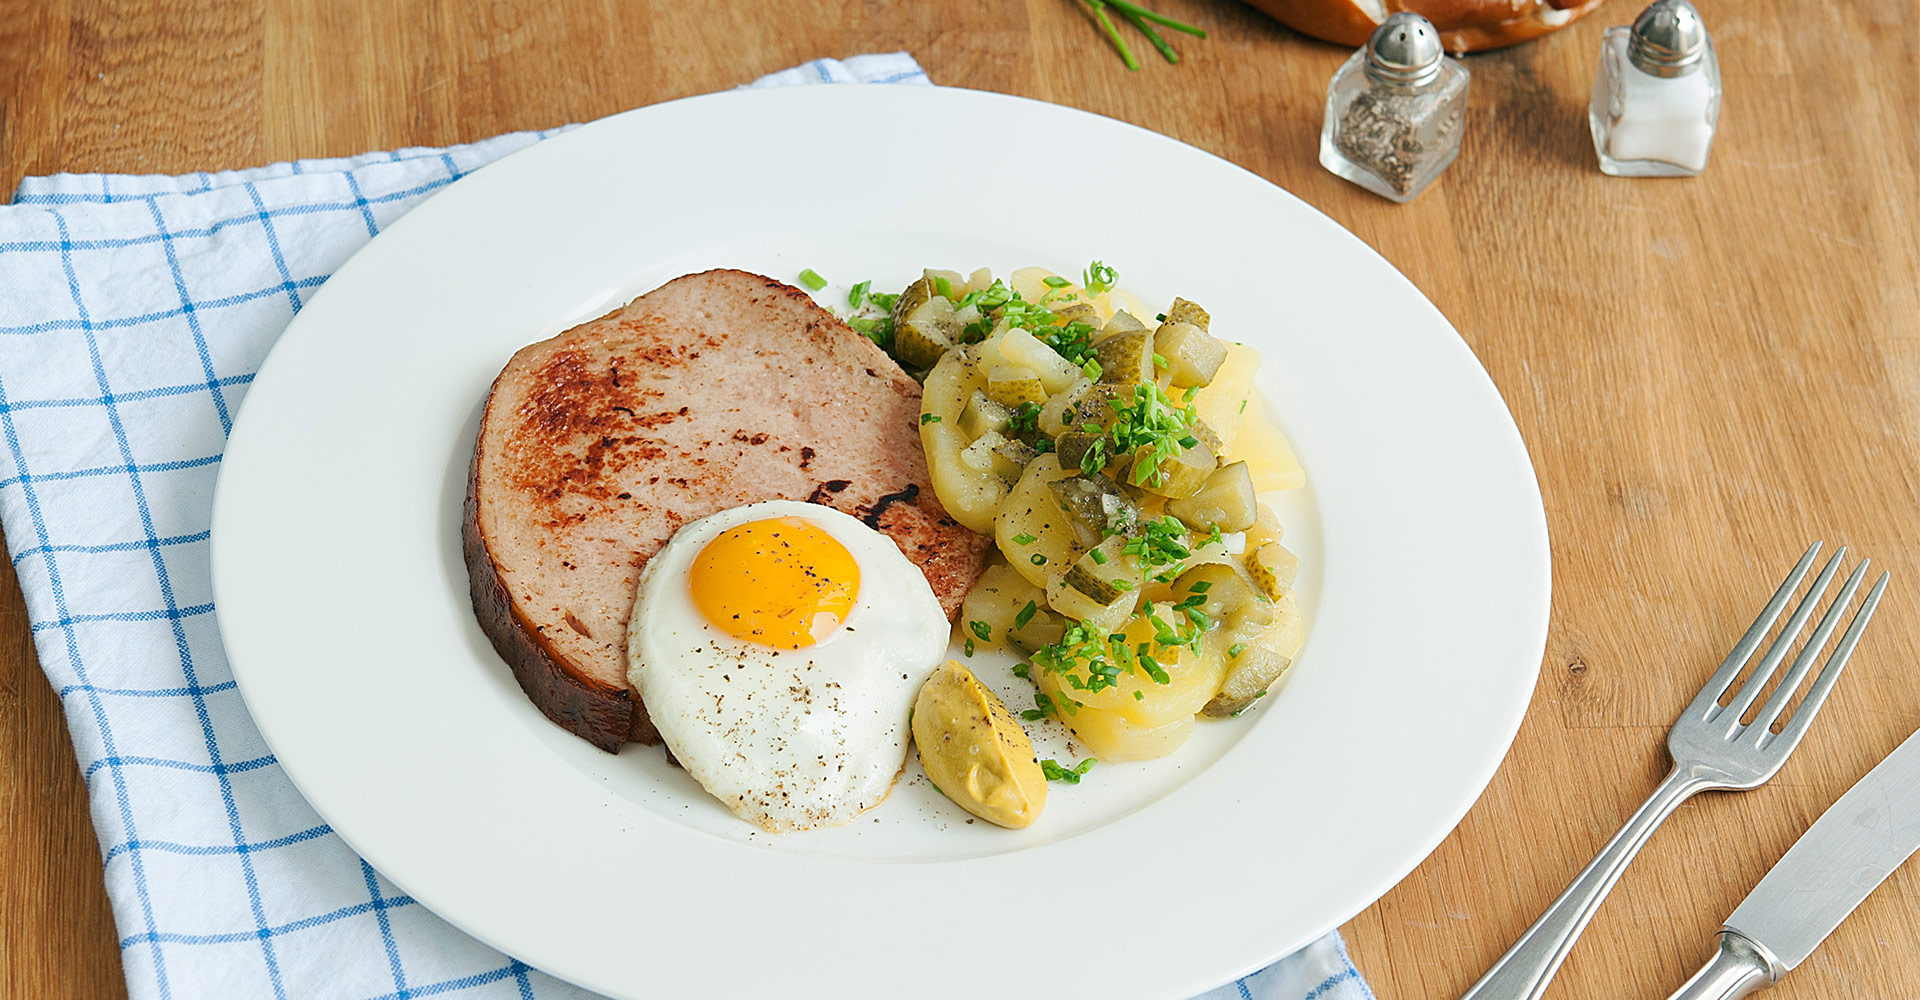 Bavarian meatloaf with potato salad